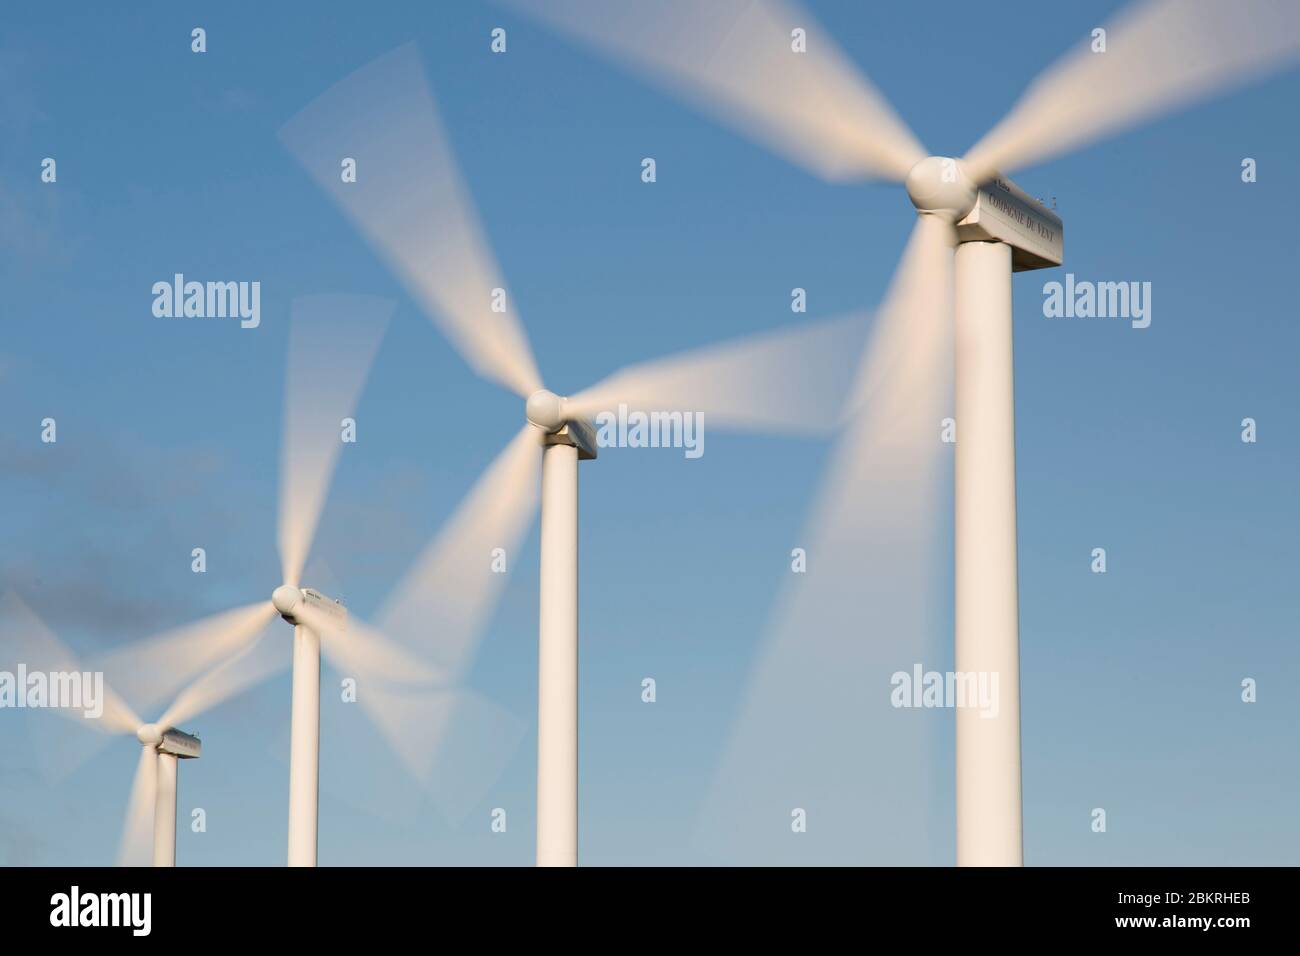 Frankreich, Aude, Nevian, Grande Garrigue de Nevian Windpark, bestehend aus 21 Windkraftanlagen, 0,85 MW gamesa eolica Turbine für eine Gesamtleistung von 17.55 MW, Compagnie du vent LCV, Engie Green, Tochtergesellschaft von '' Engie spezialisiert auf erneuerbare Energien Stockfoto